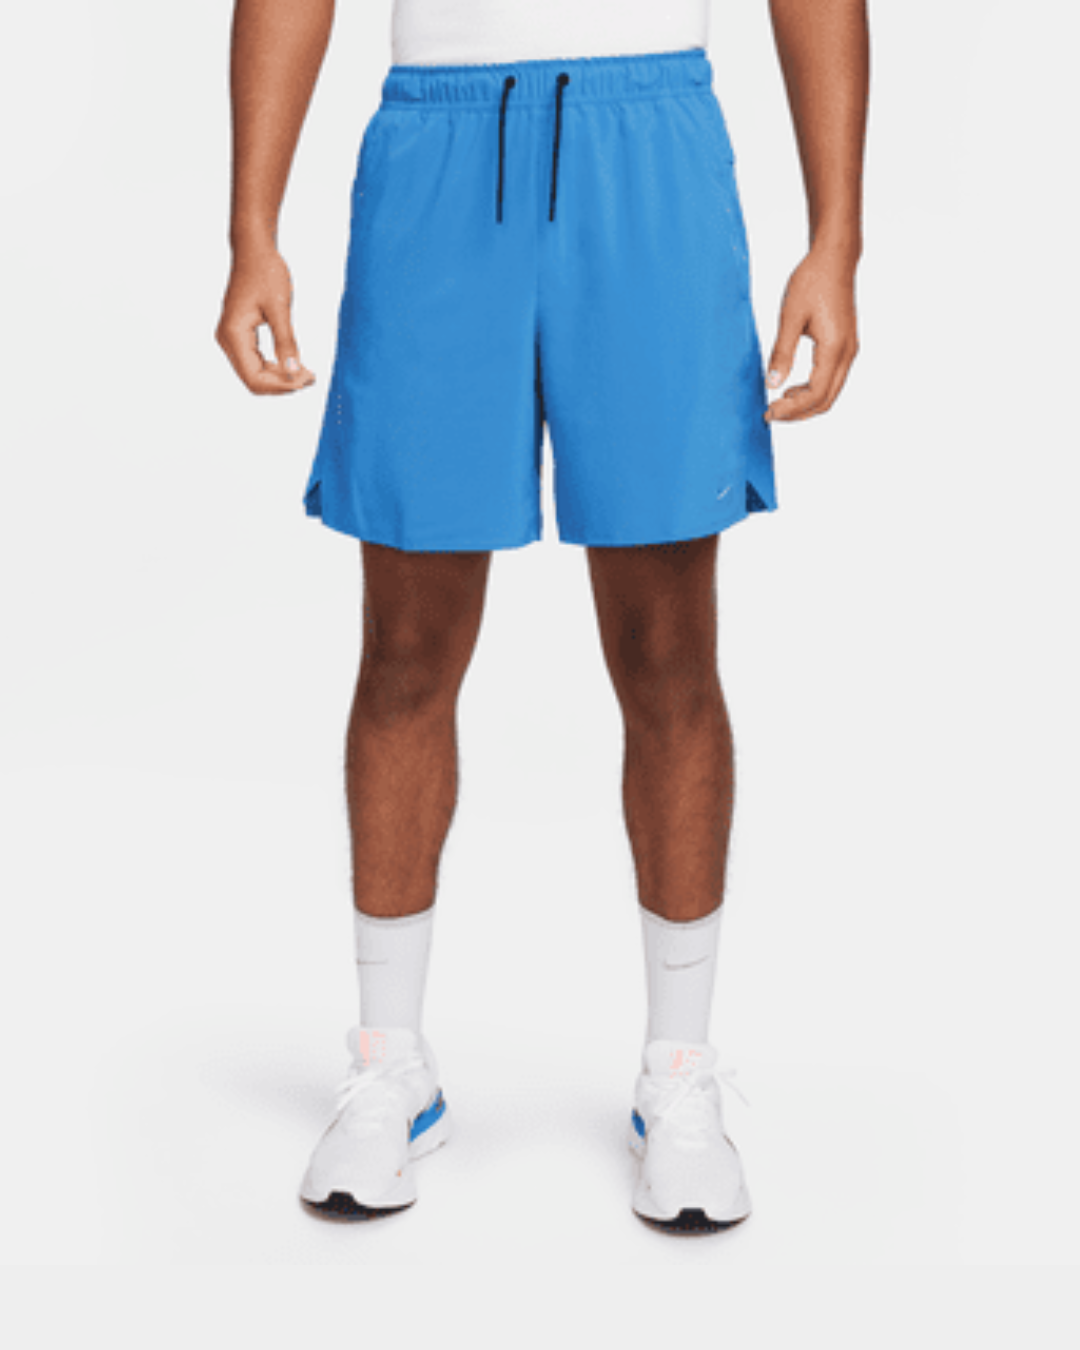 Short Nike Unlimited - Blau